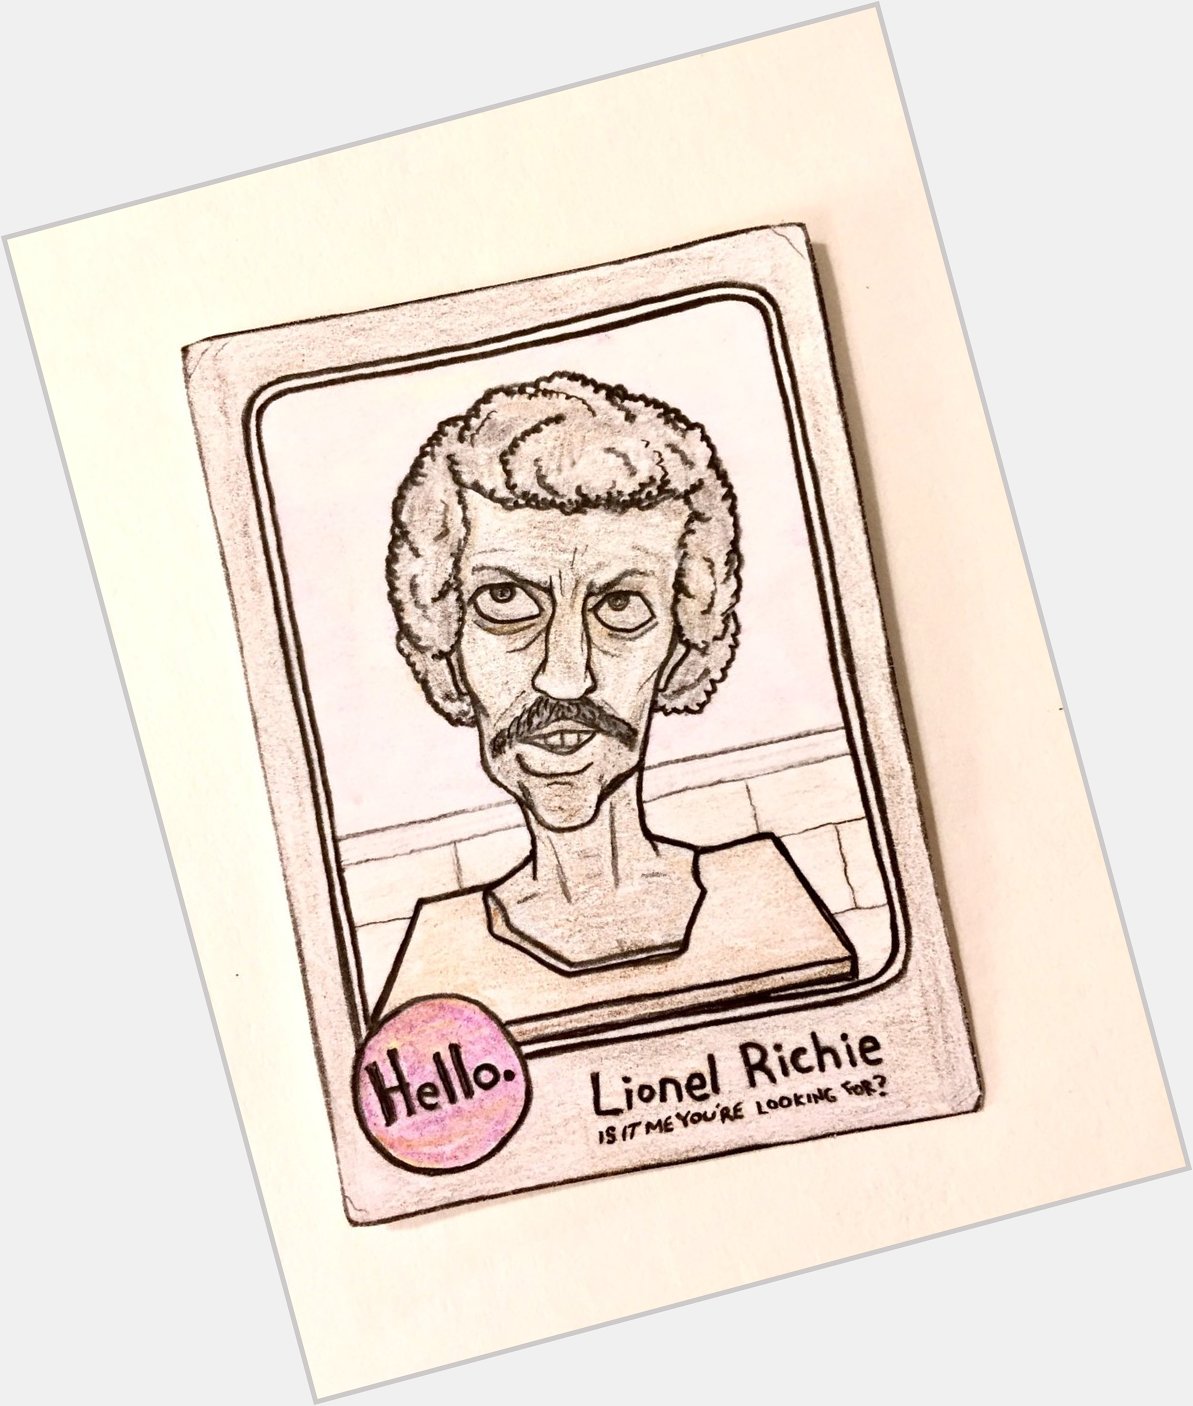 Happy birthday, Lionel Richie! 